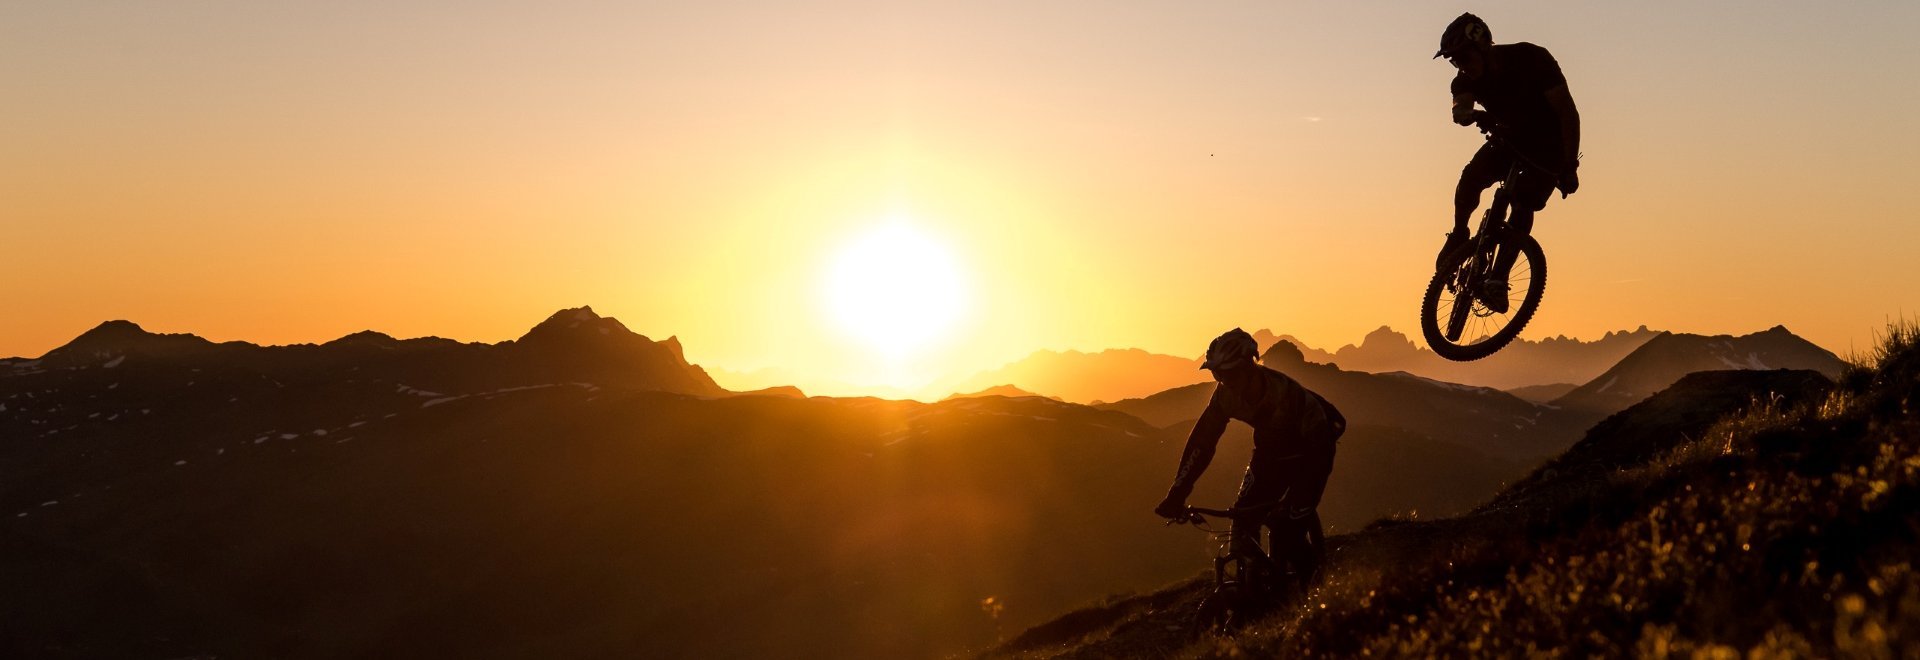 Radfahrer bei Sonnenuntergang in der Bergwelt von Saalbach Hinterglemm bei orangenem Licht